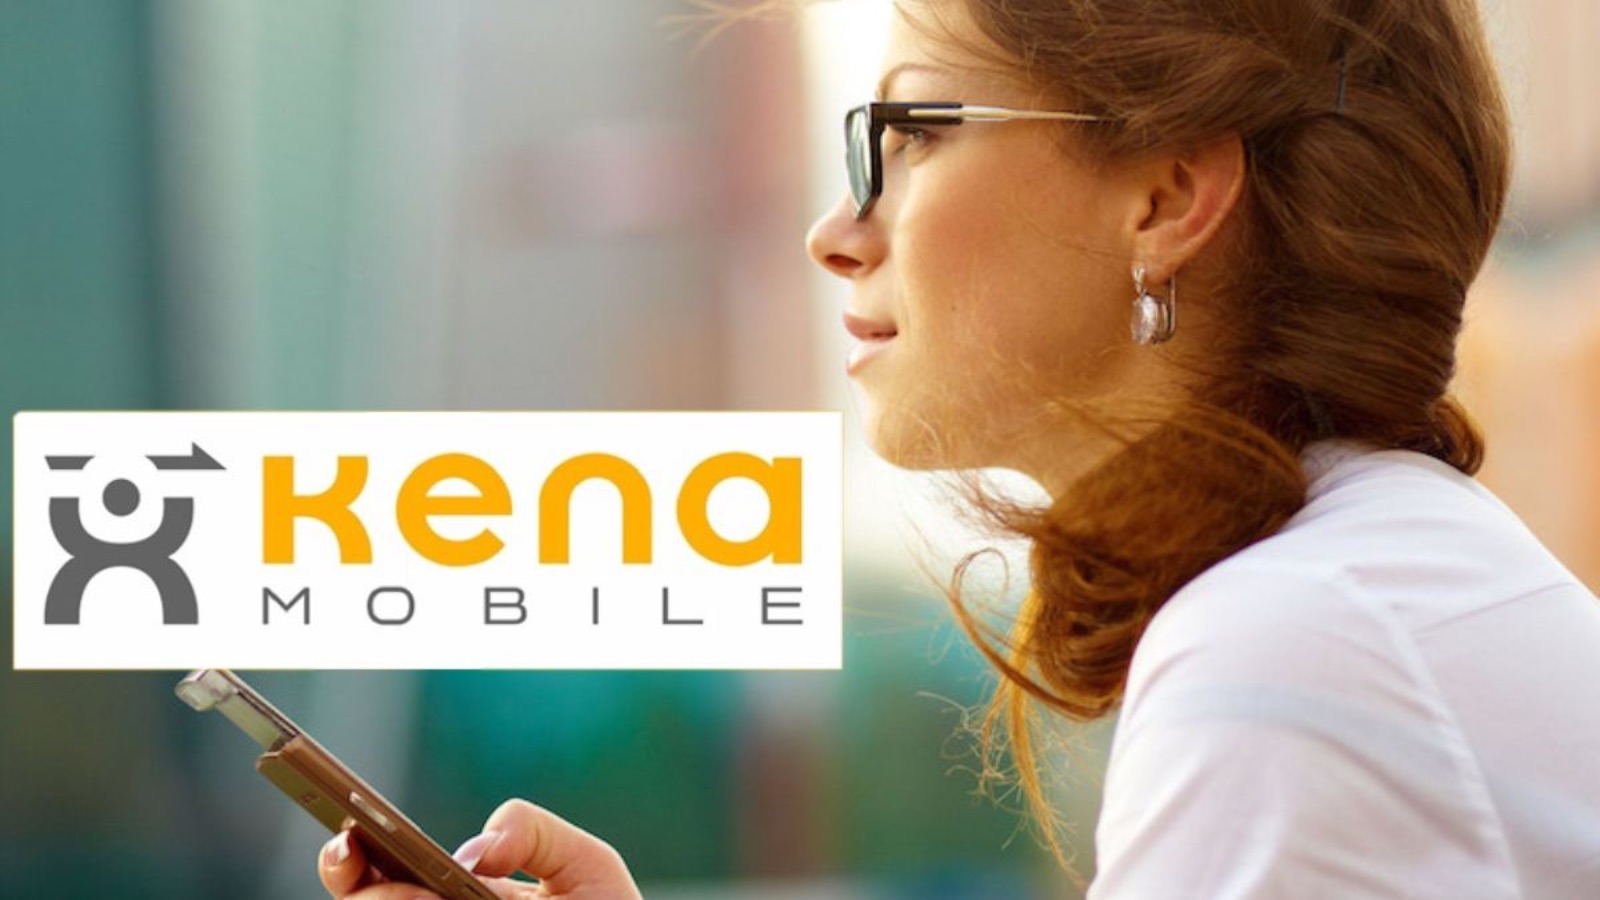 Kena Mobile ha la SUPER OFFERTA da 5 EURO con tutto incluso